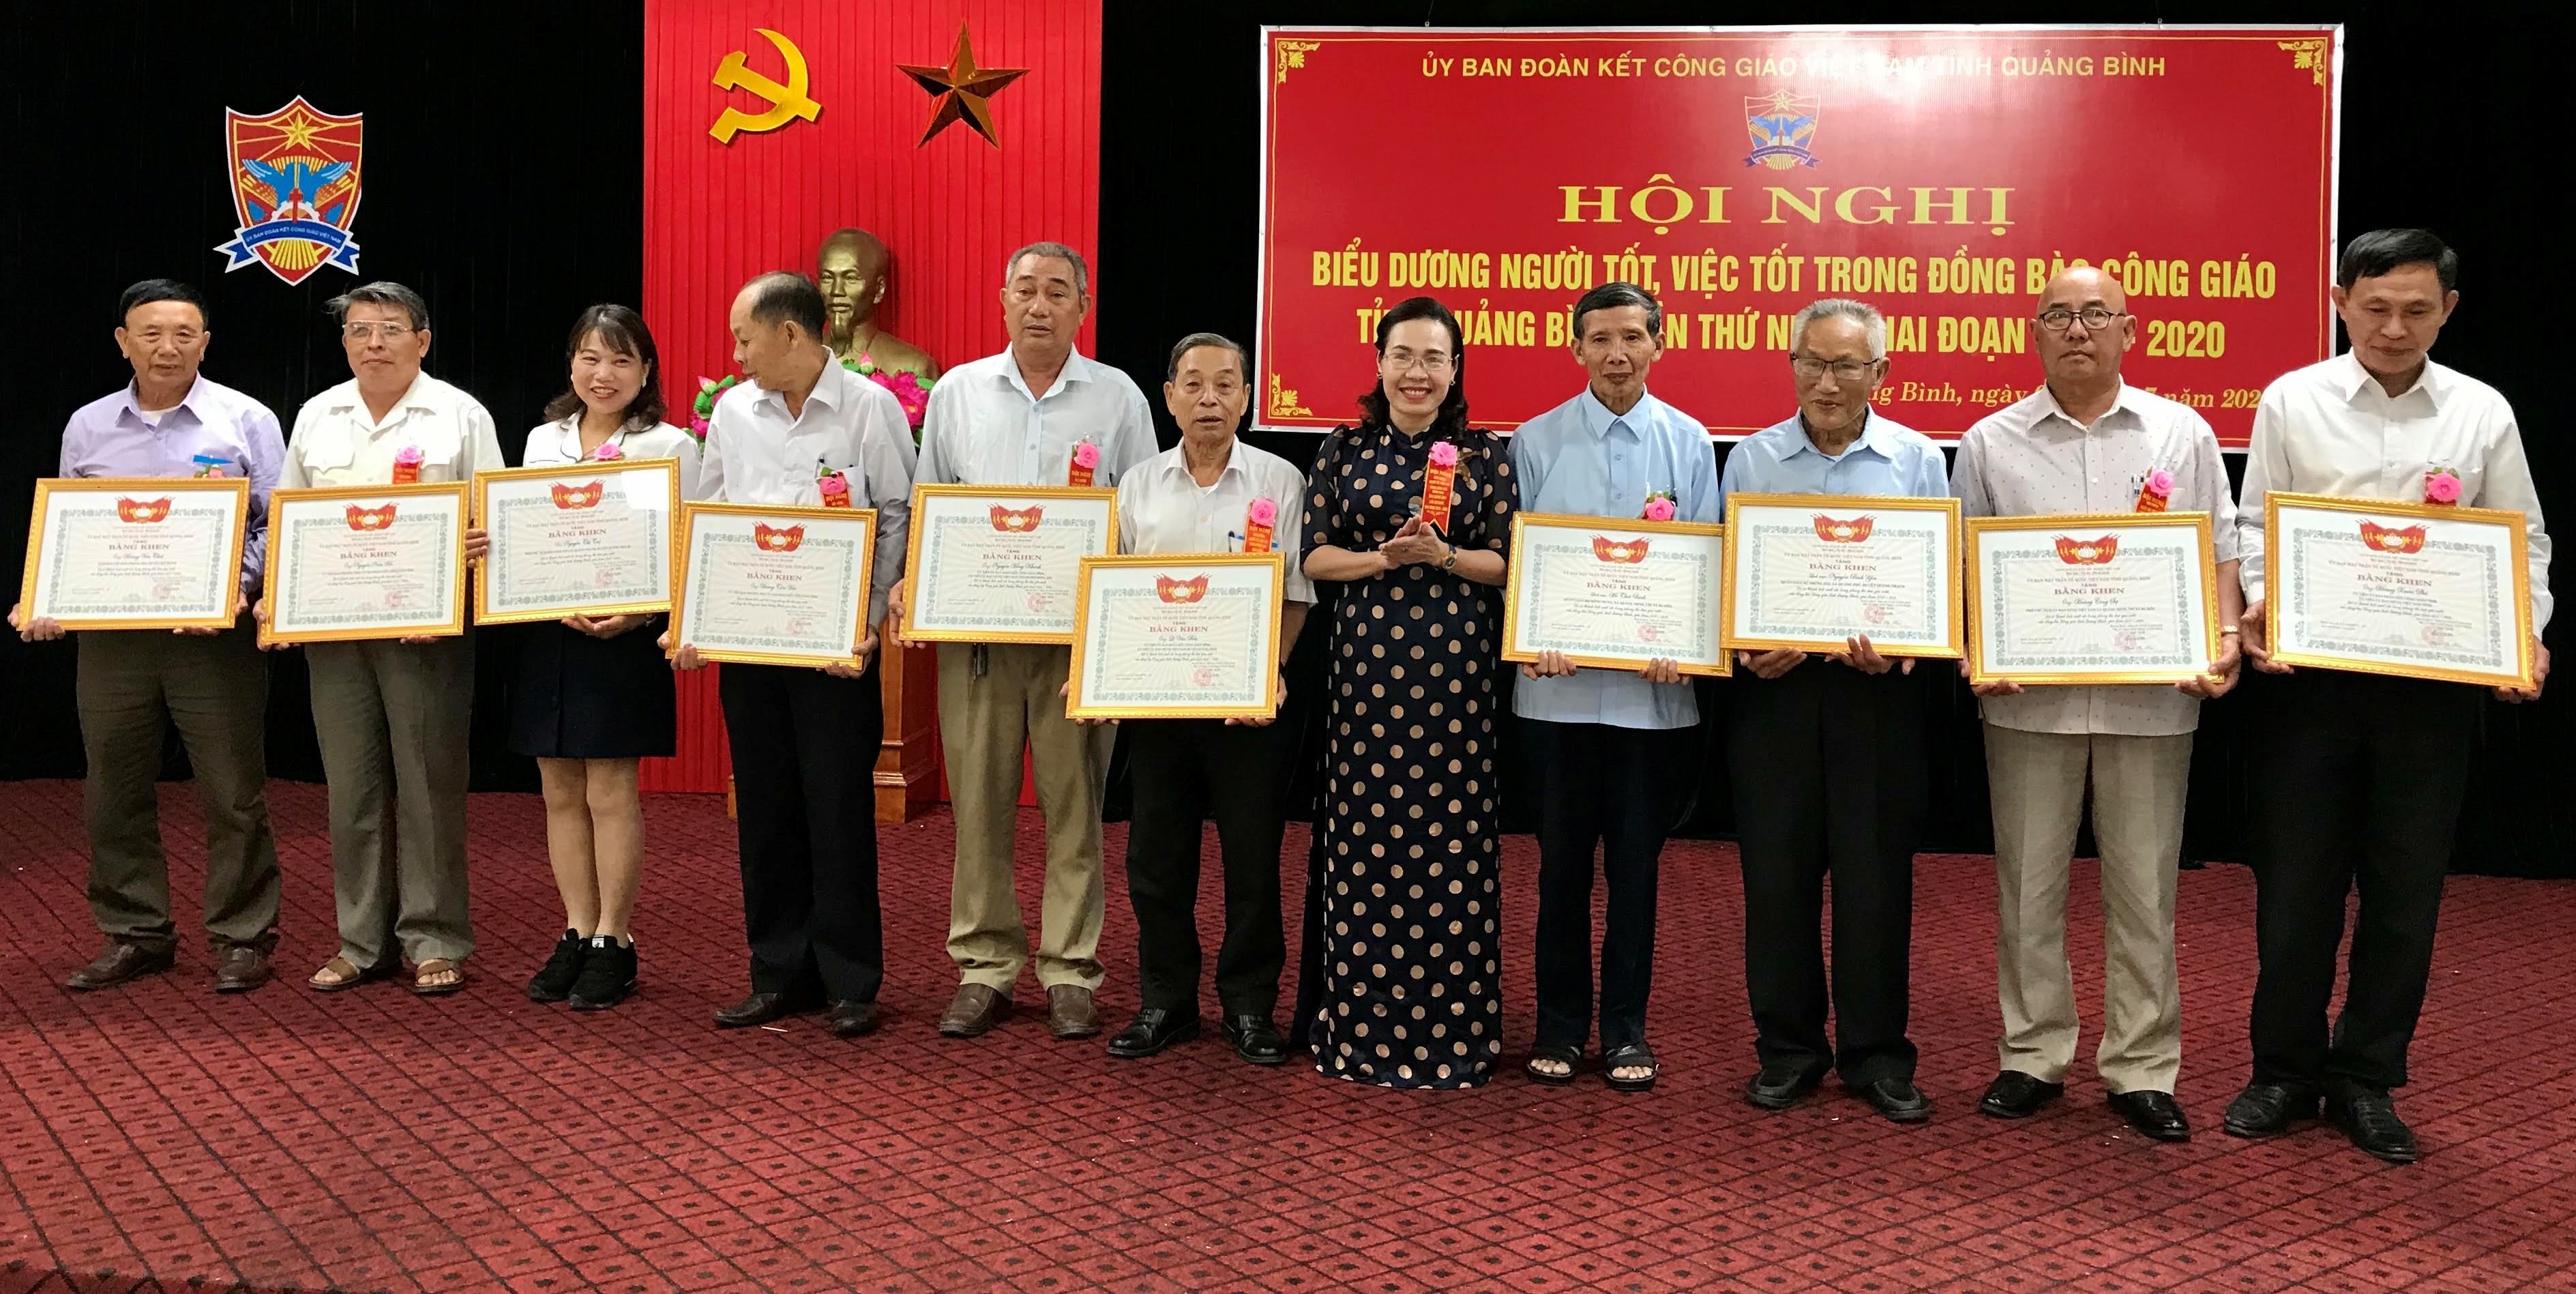  Chị Nguyễn Thị Tuệ (thứ 3 từ trái qua) là 1 trong 10 cá nhân được Ủy ban MTTQVN tỉnh tặng bằng khen trong thực hiện phong trào thi đua yêu nước của đồng bào Công giáo tỉnh, giai đoạn 2015-2020.